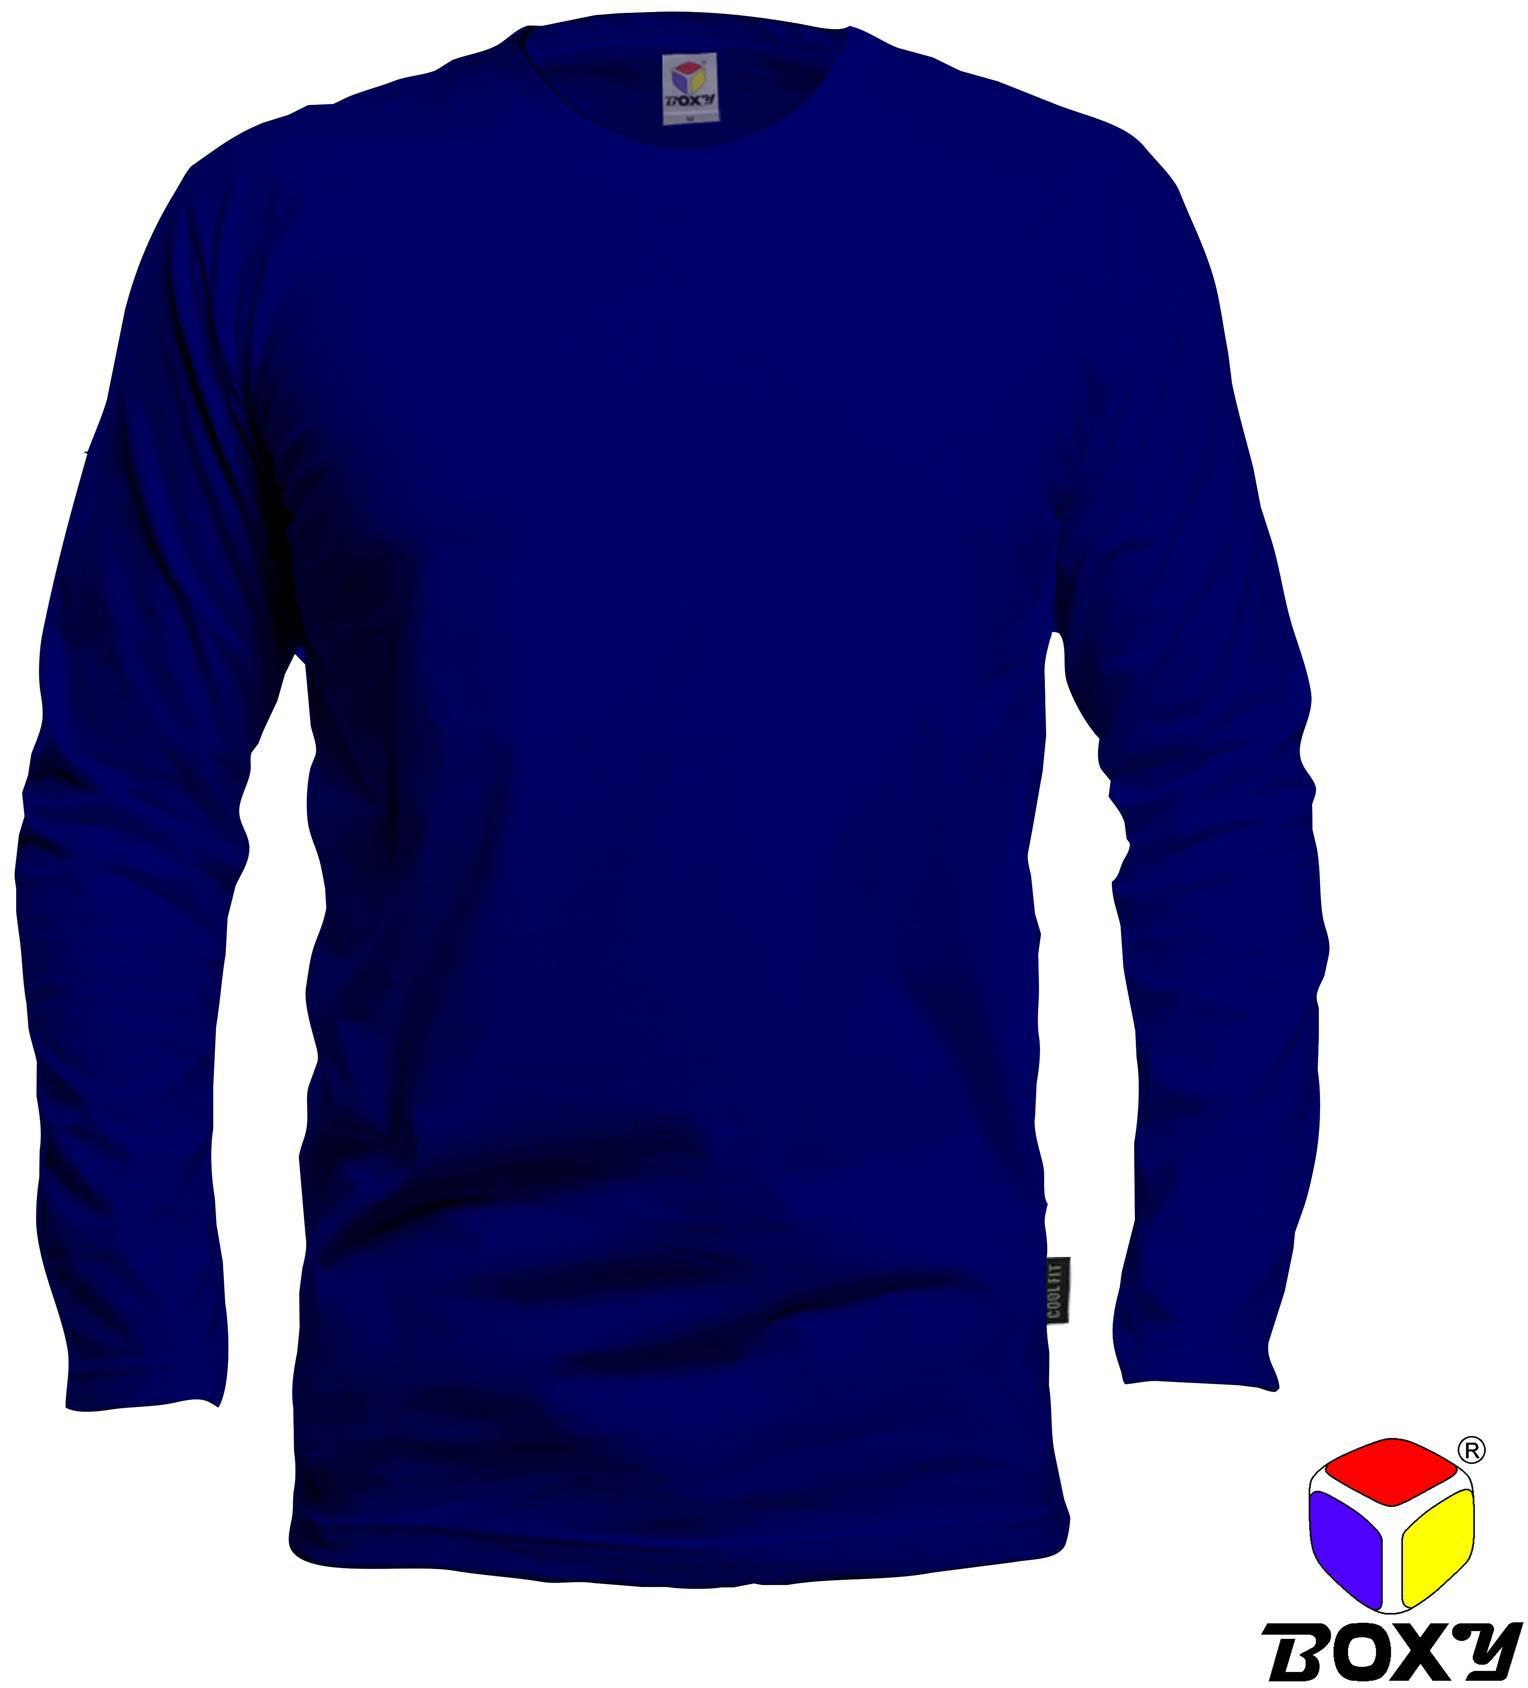 Boxy Round Neck Long Sleeves Plain T-shirt - 7 Sizes (Royal Blue)